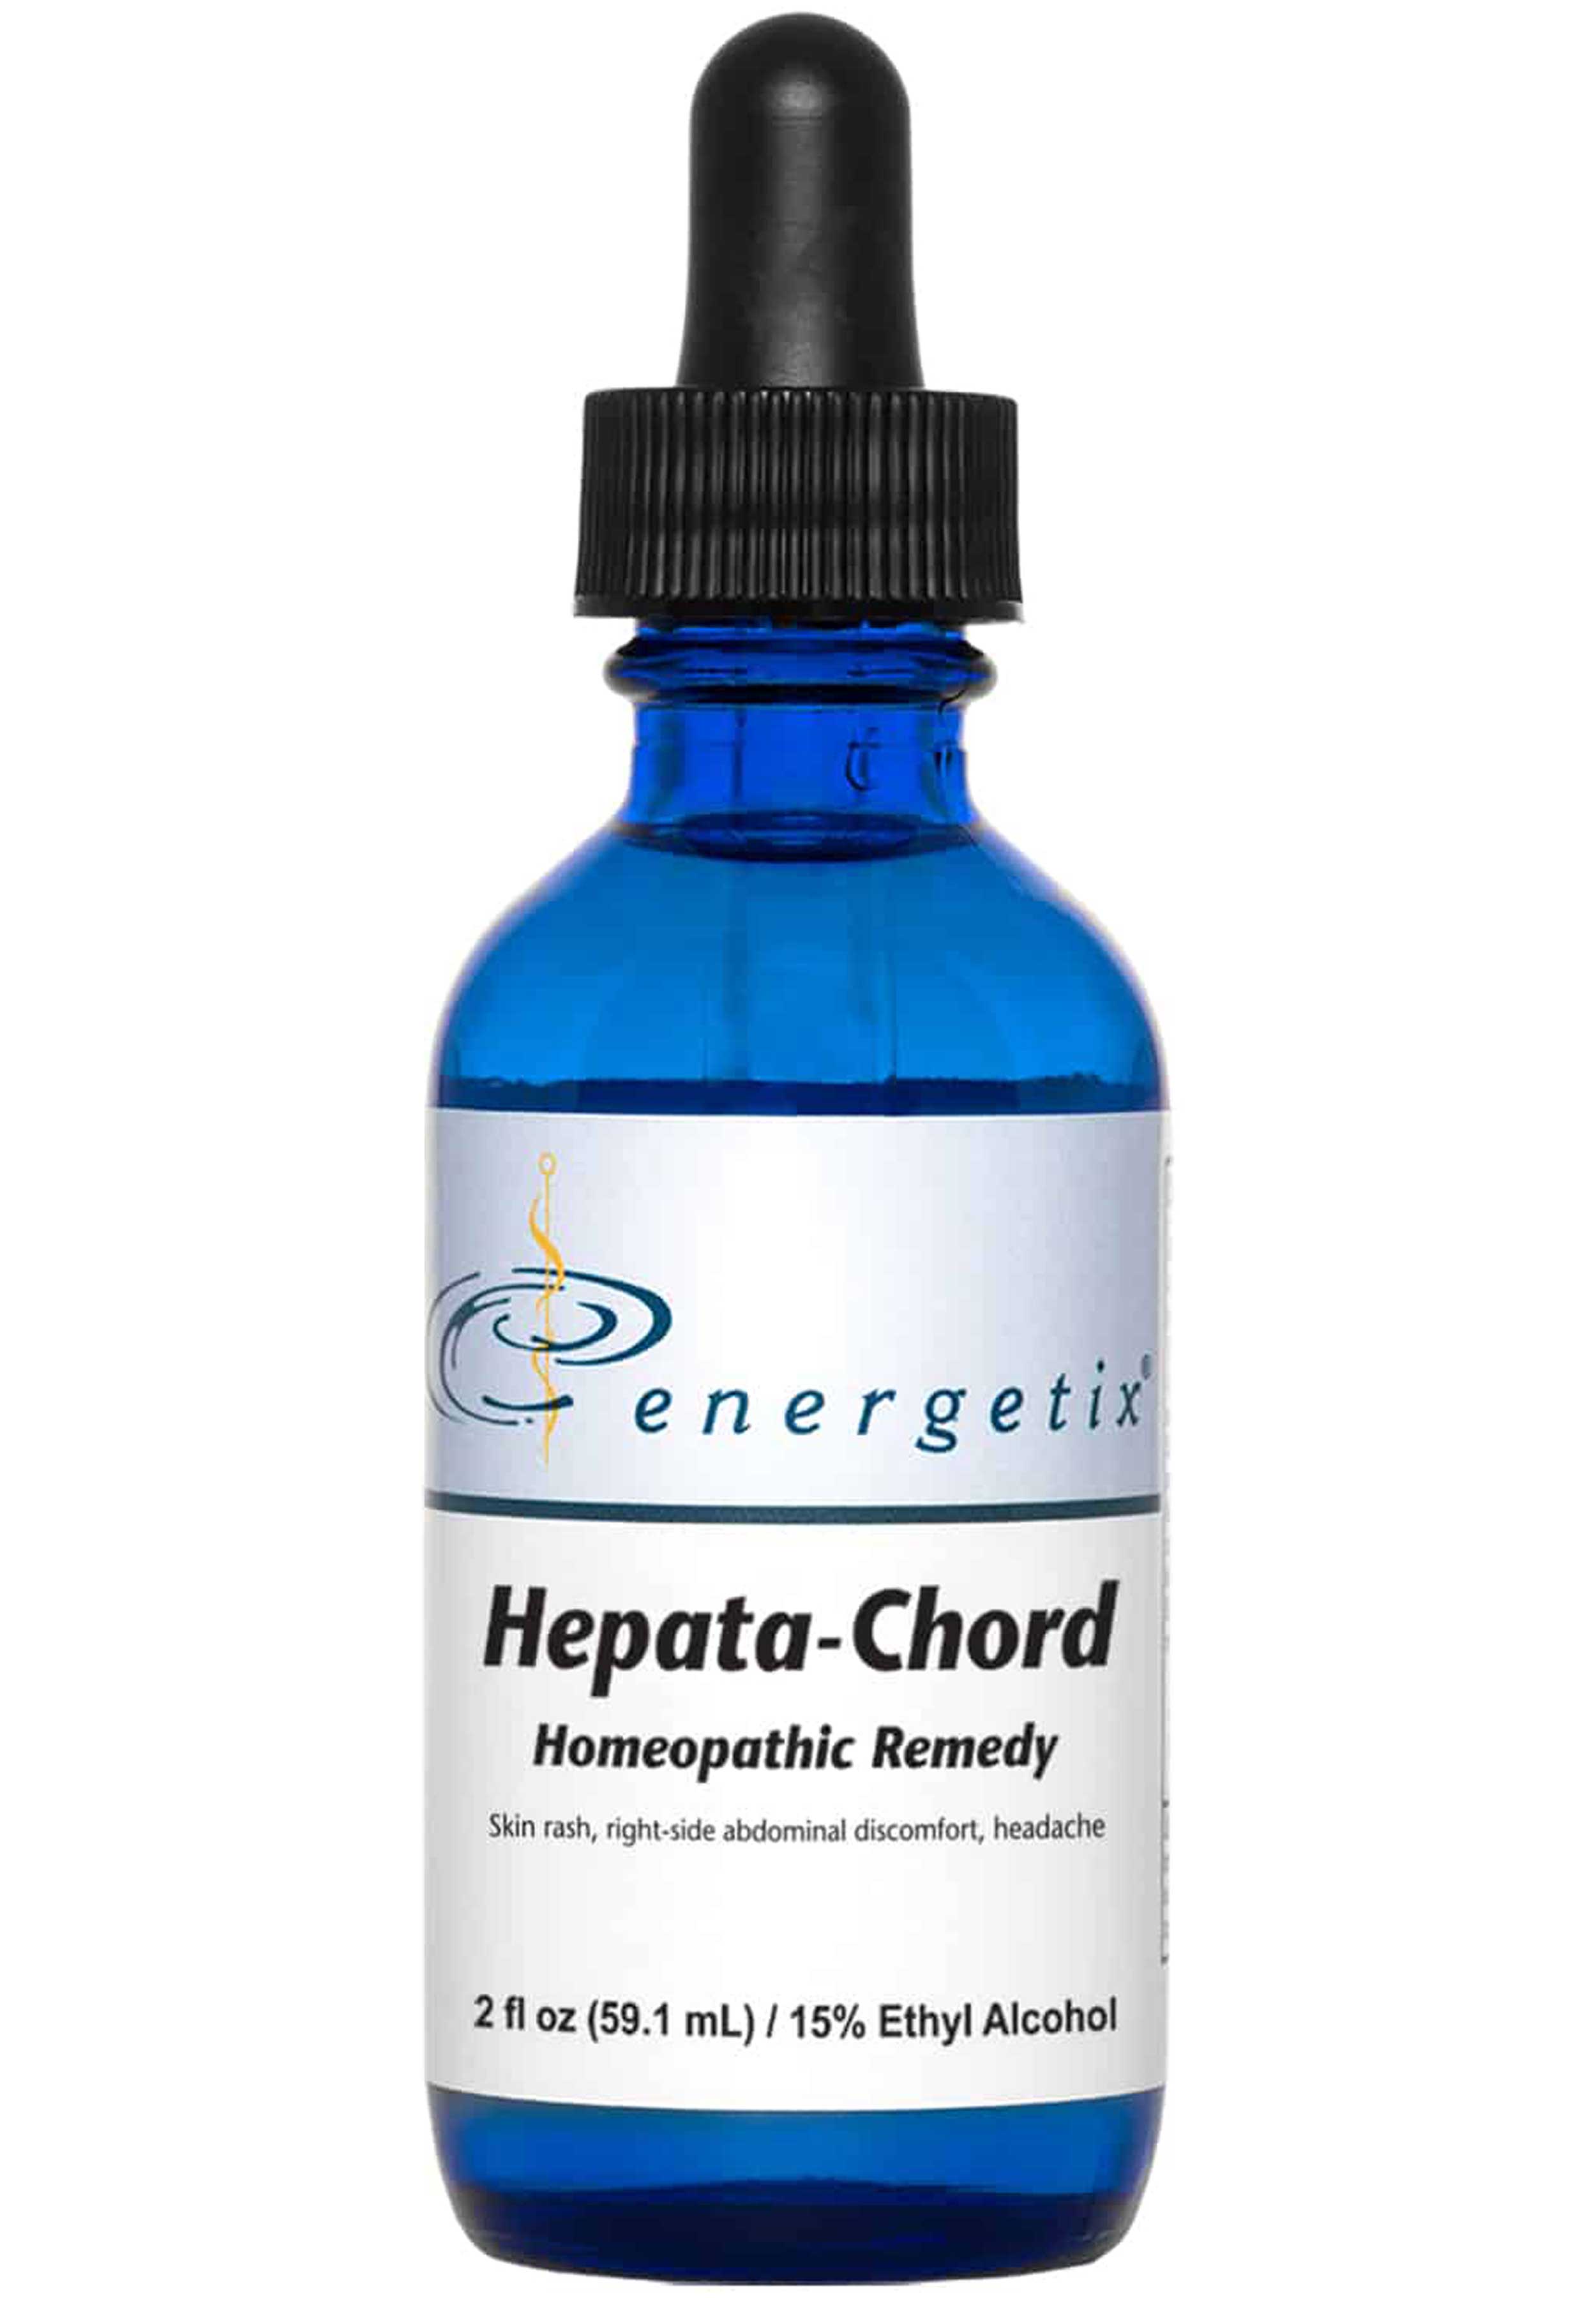 Energetix Hepata-Chord